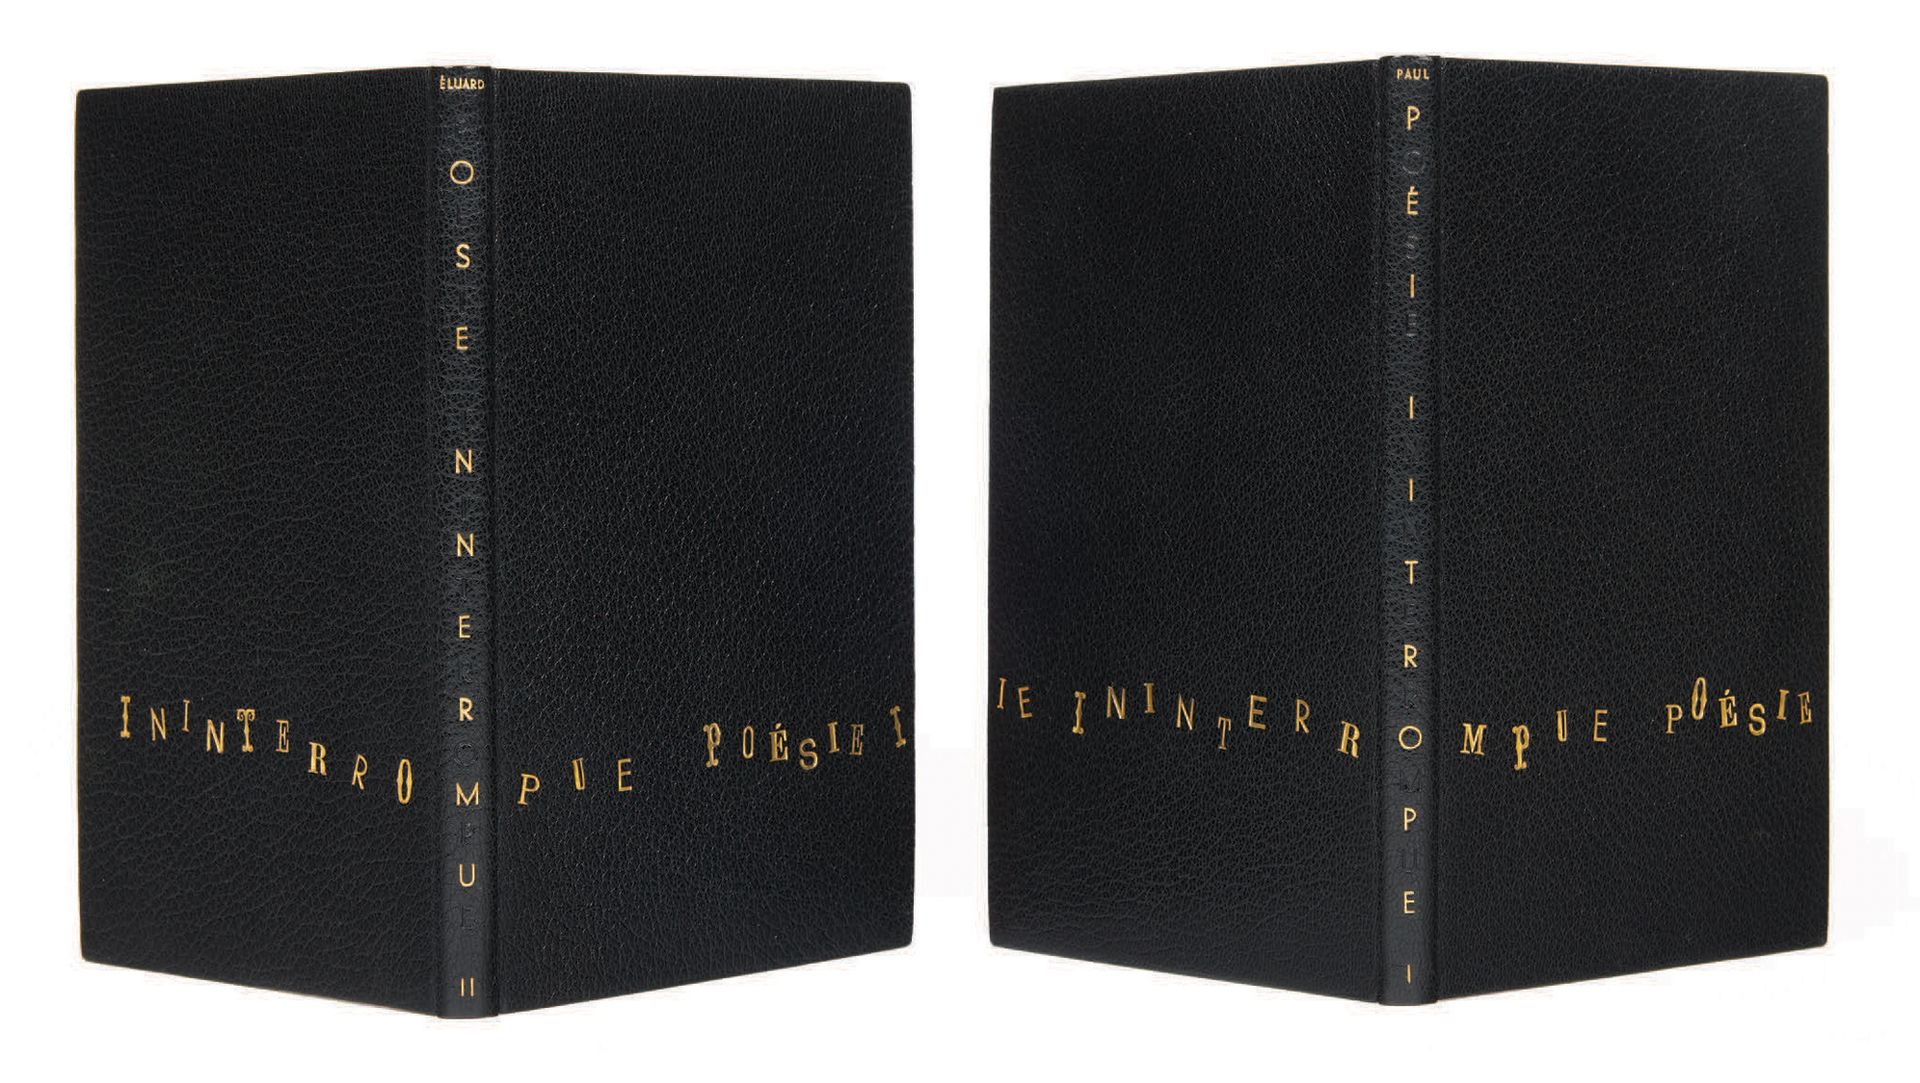 Paul Eluard. Poésie ininterrompue I et II. Paris, Gallimard, 1946-1953.
2 volumi&hellip;